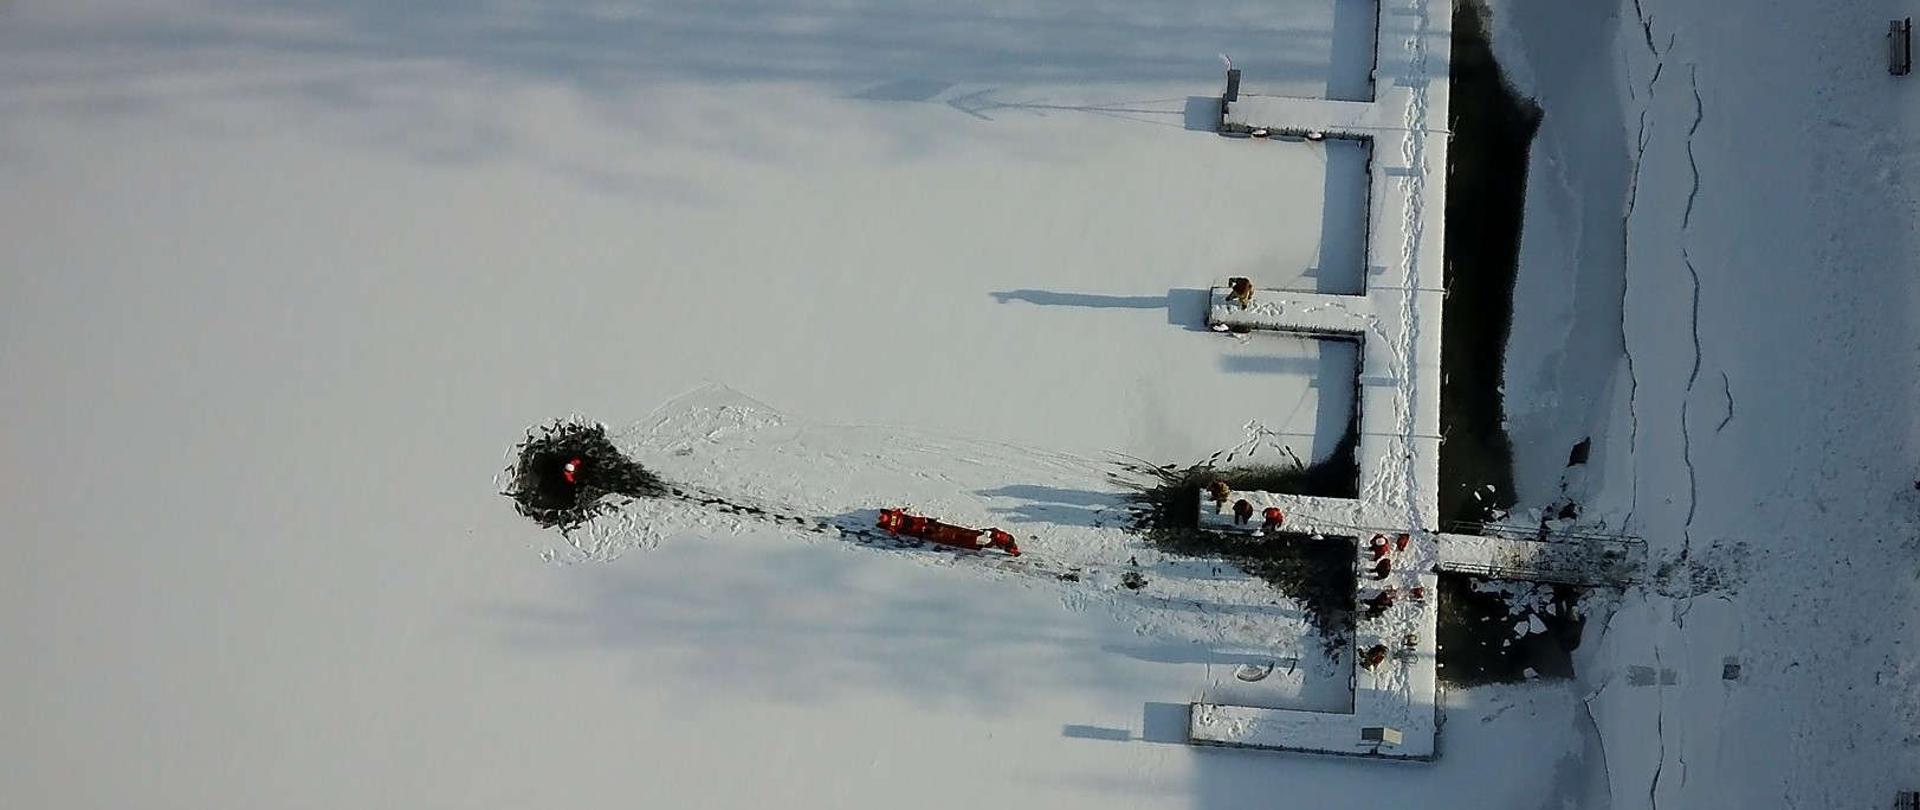 zdjęcie przedstawia zamarznięty zbiornik wodny i strażaków będących na pokrywie lodowej 